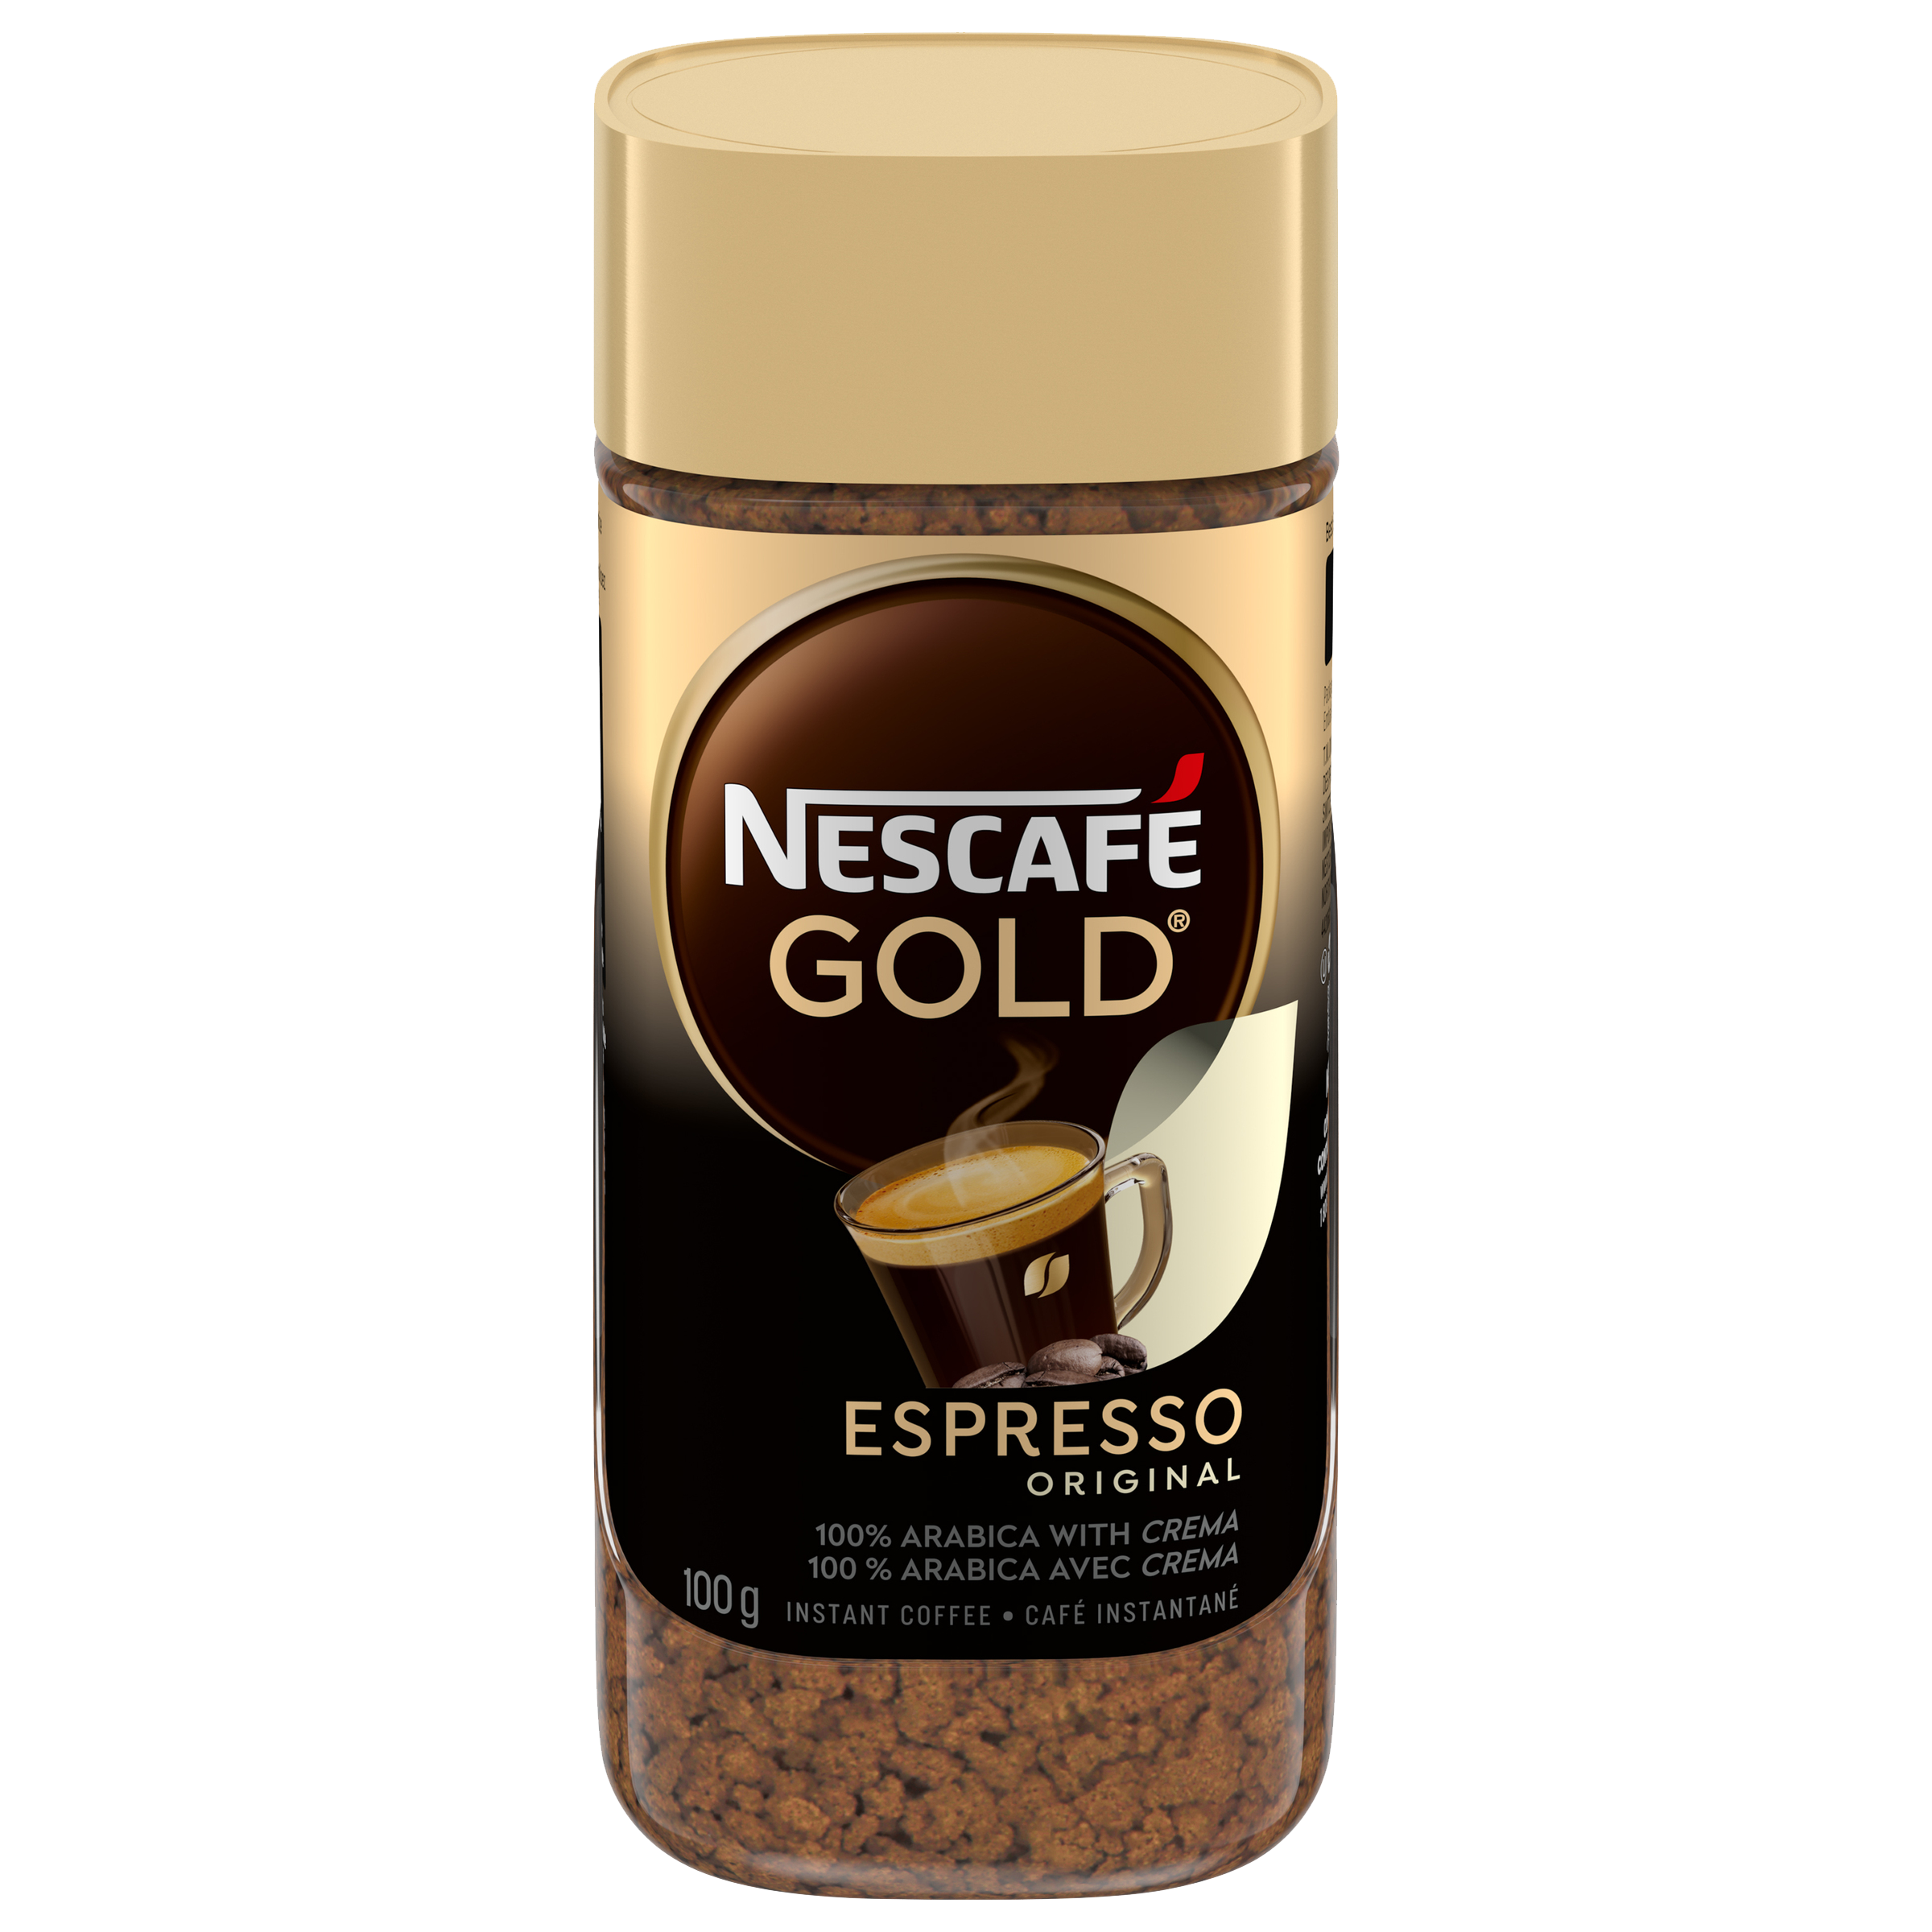 NESCAFÉ GOLD Espresso Instant Coffee